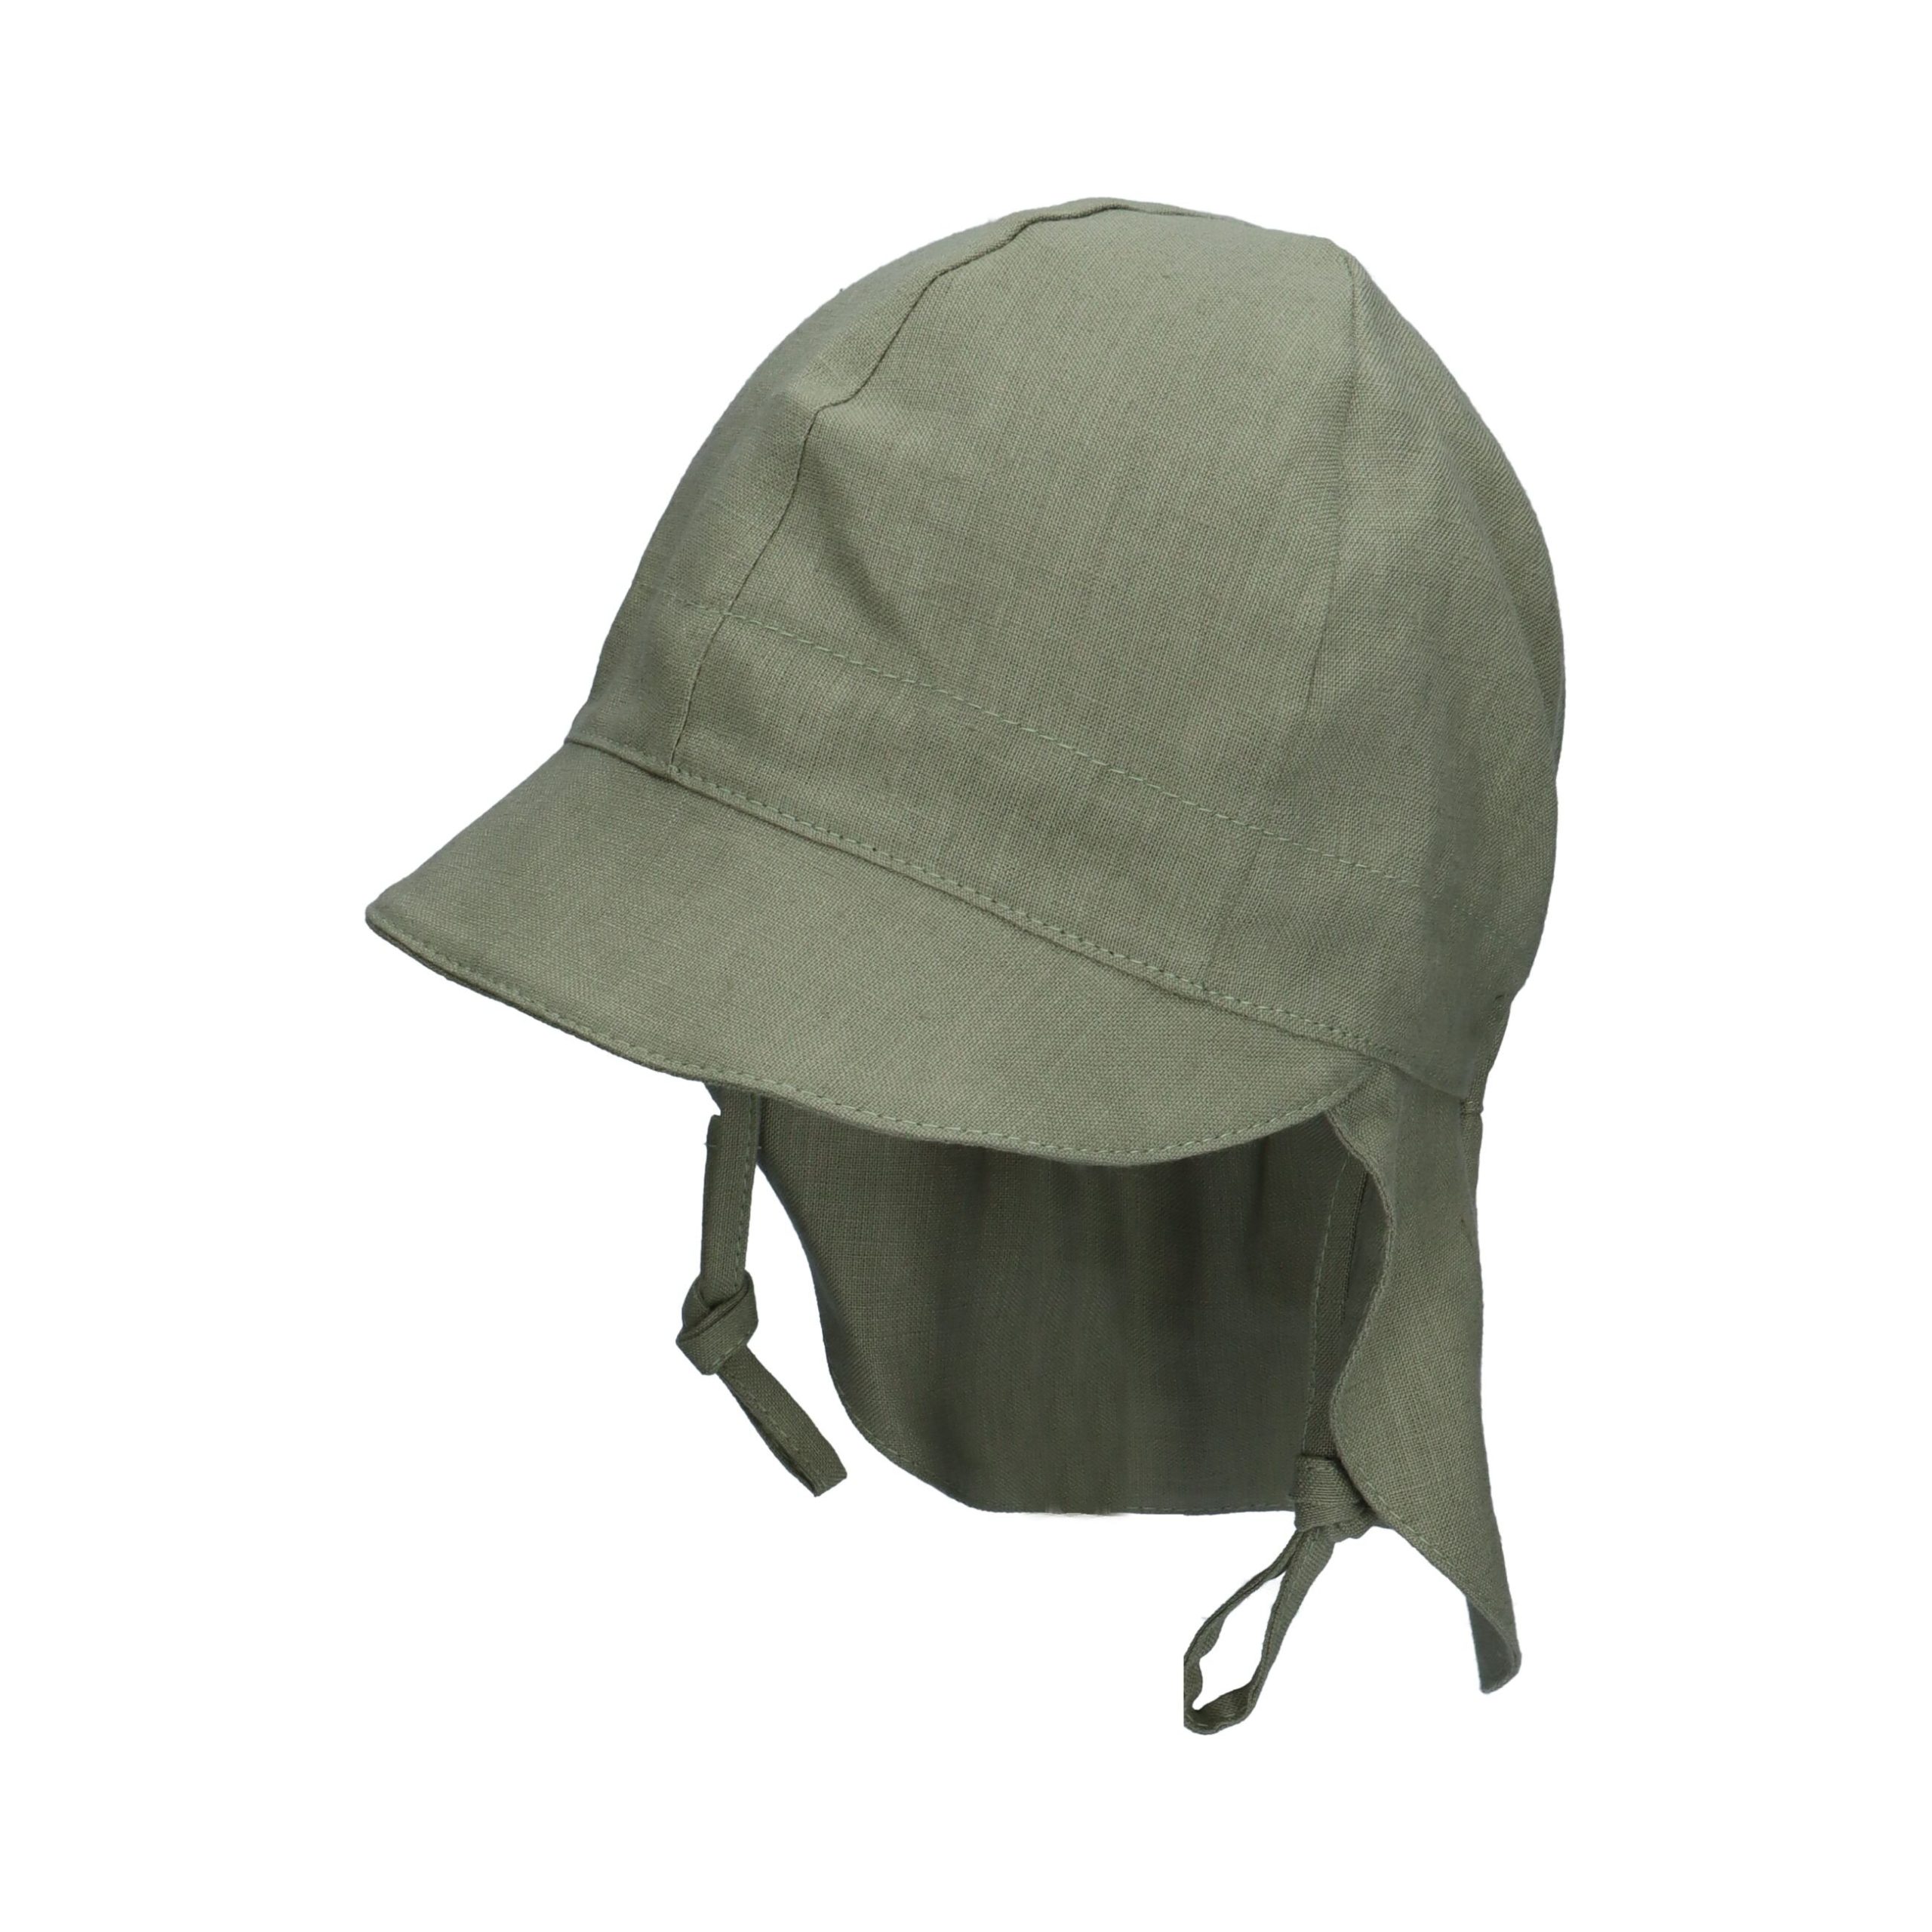 TuTu kepurė su kaklo apsauga iš natūralaus lino